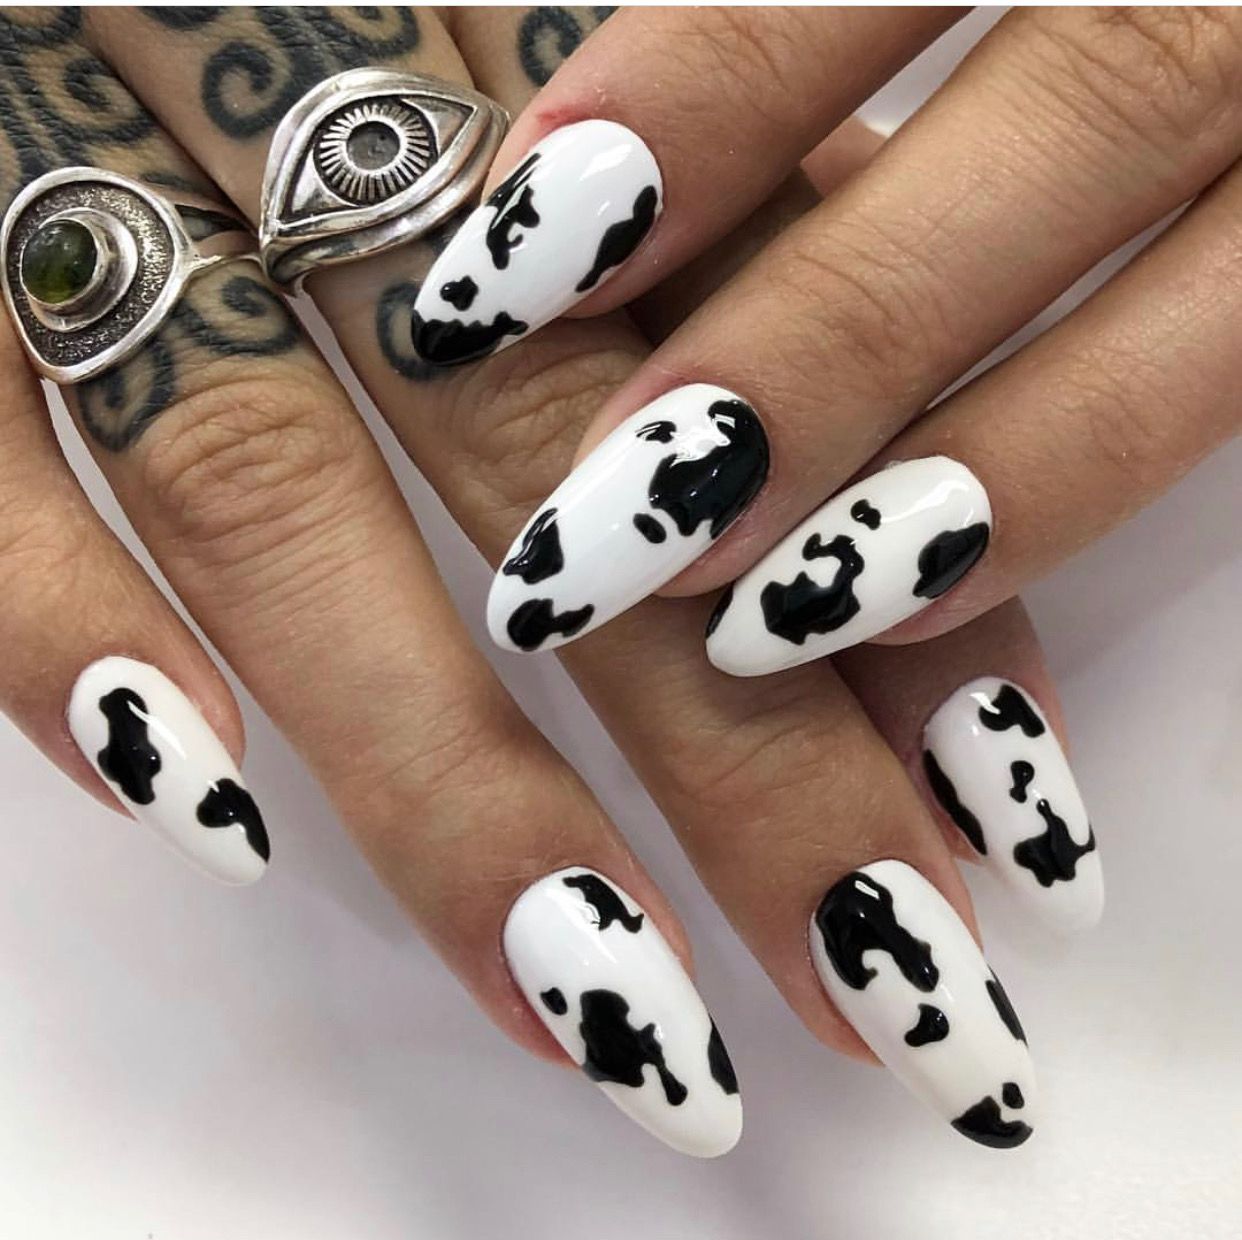 Дизайн ногтей с принтом. Маникюр далматинец. Ногти с коровьим принтом. Маникюр в стиле далматинца. Маникюр коровка.